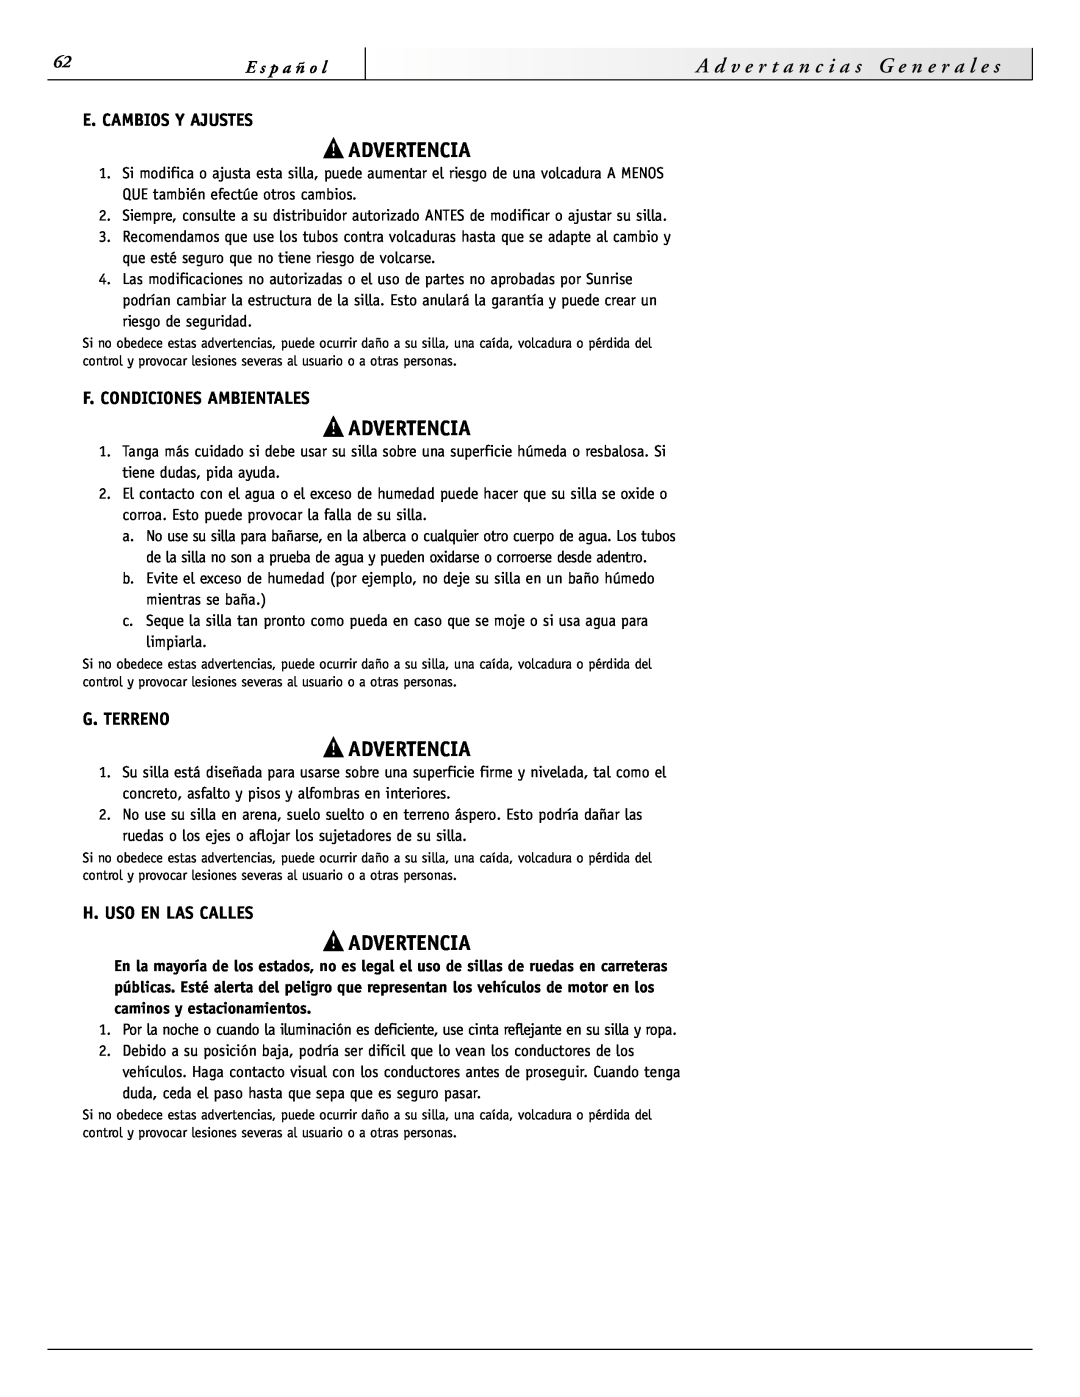 Sunrise Medical 3000 Series G e n e r a l e s, E. Cambios Y Ajustes, F. Condiciones Ambientales, G. Terreno, Advertencia 